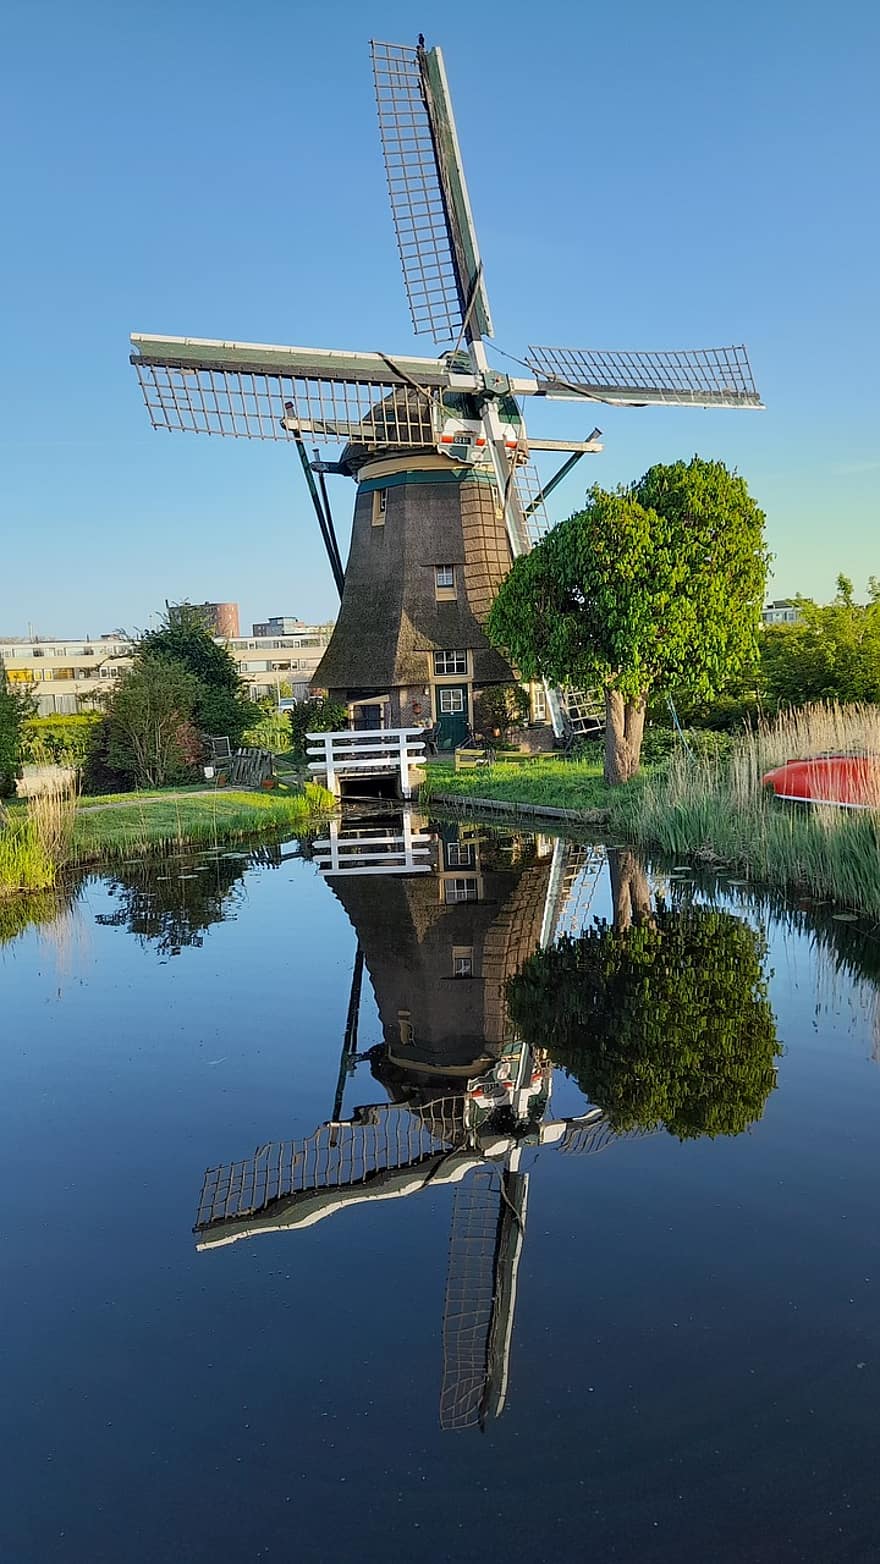 cối xay gió, nước Hà Lan, Thiên nhiên, sự phản chiếu, năng lượng, quyền lực, Nước, cảnh nông thôn, mùa hè, nơi nổi tiếng, các nền văn hóa